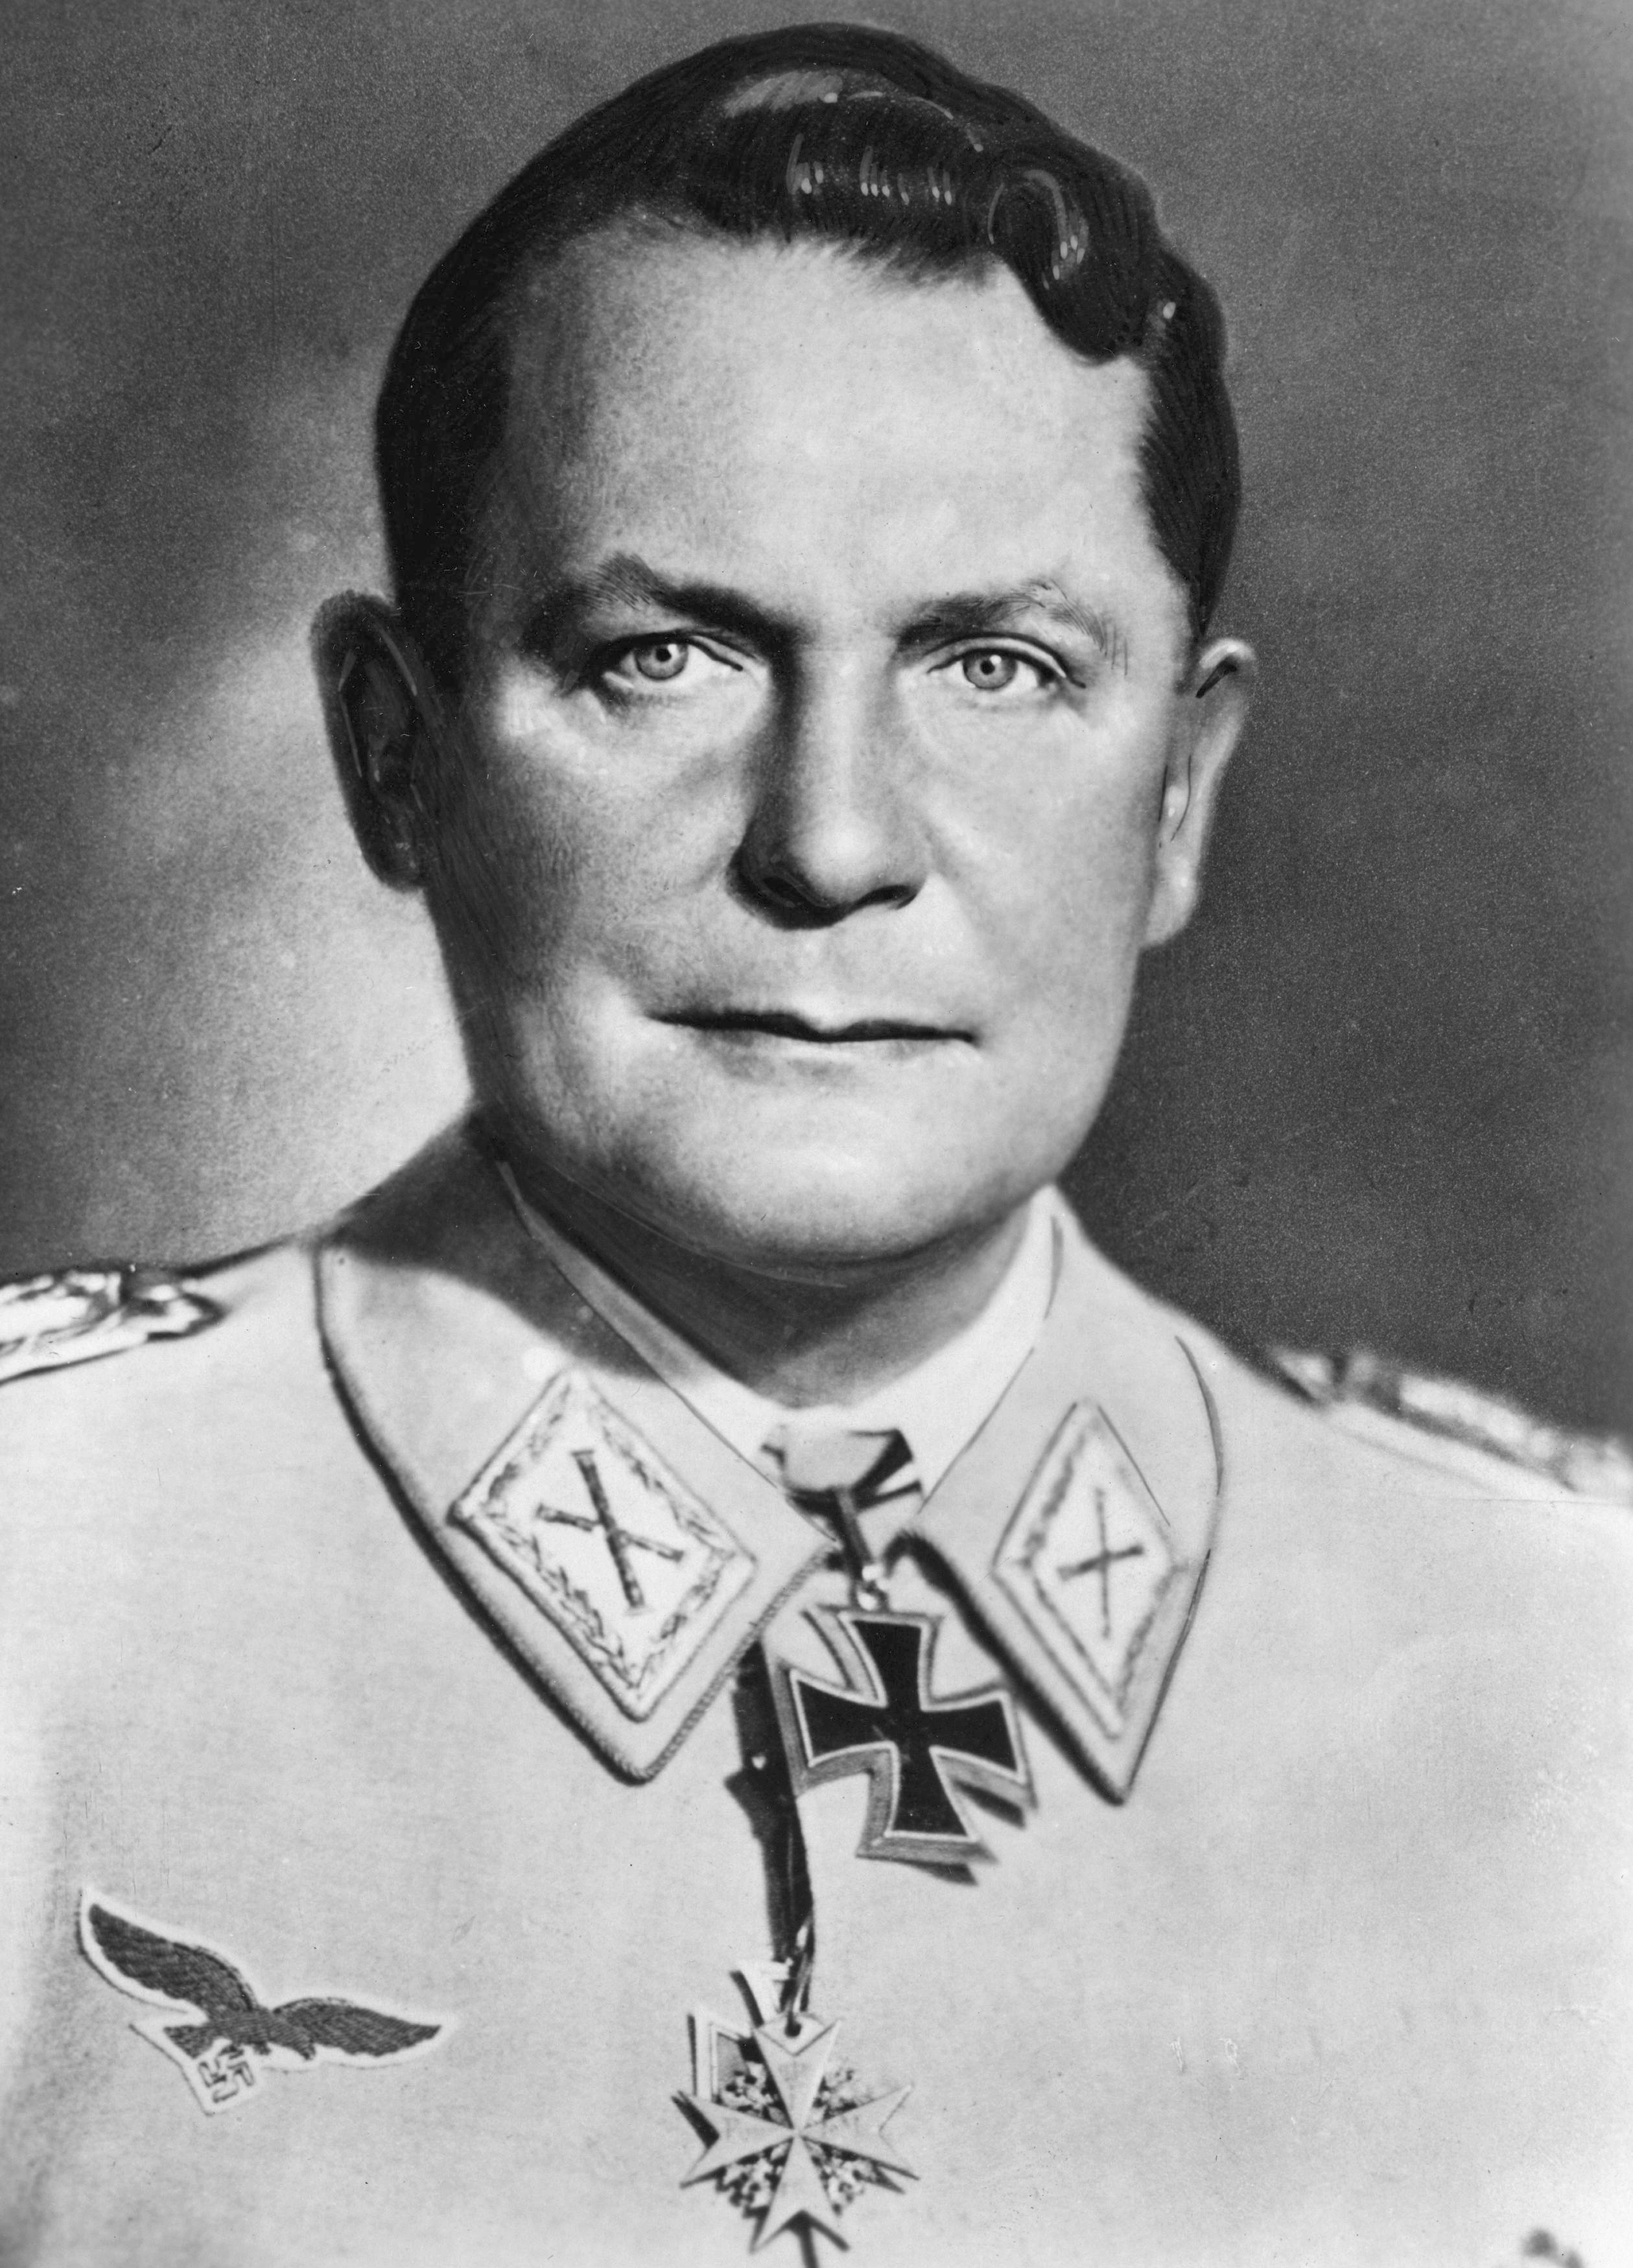 Image of Hermann Goering